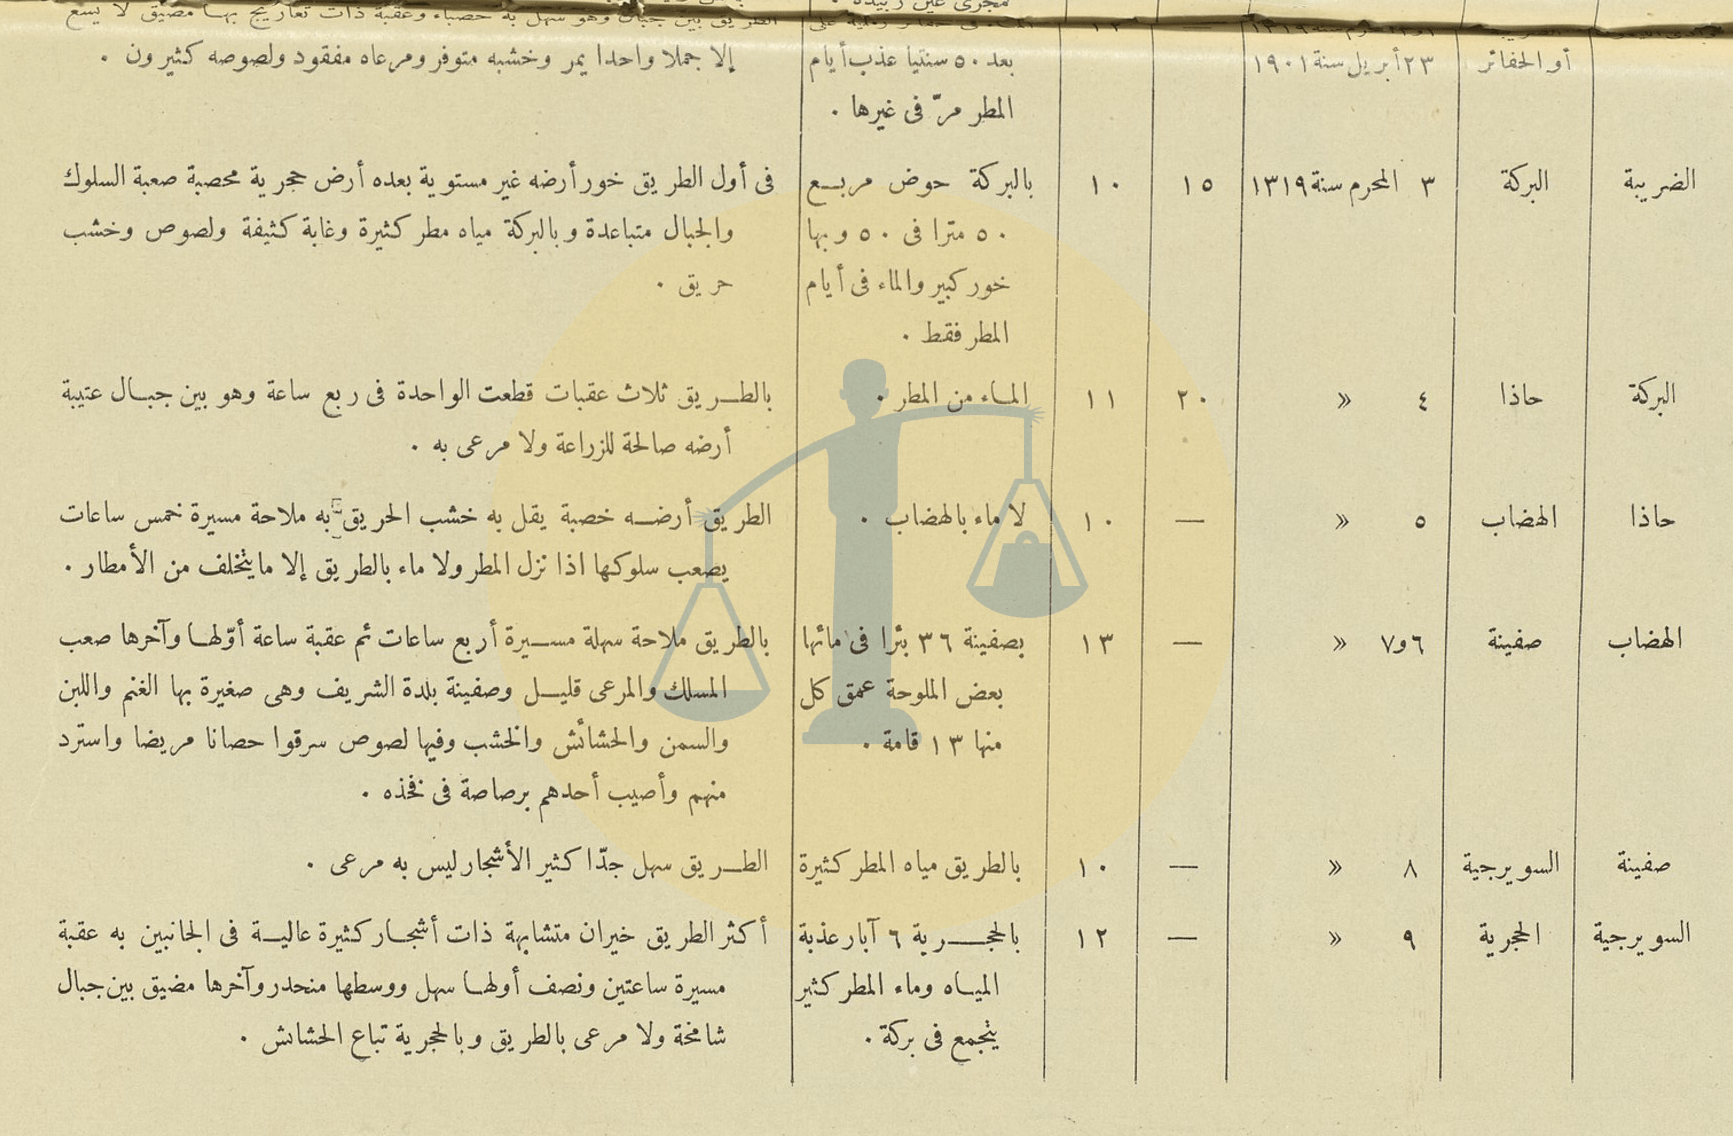 جدول خط السير من مصر إلى الحجاز قبل سنوات كوليرا 47 - ص 2